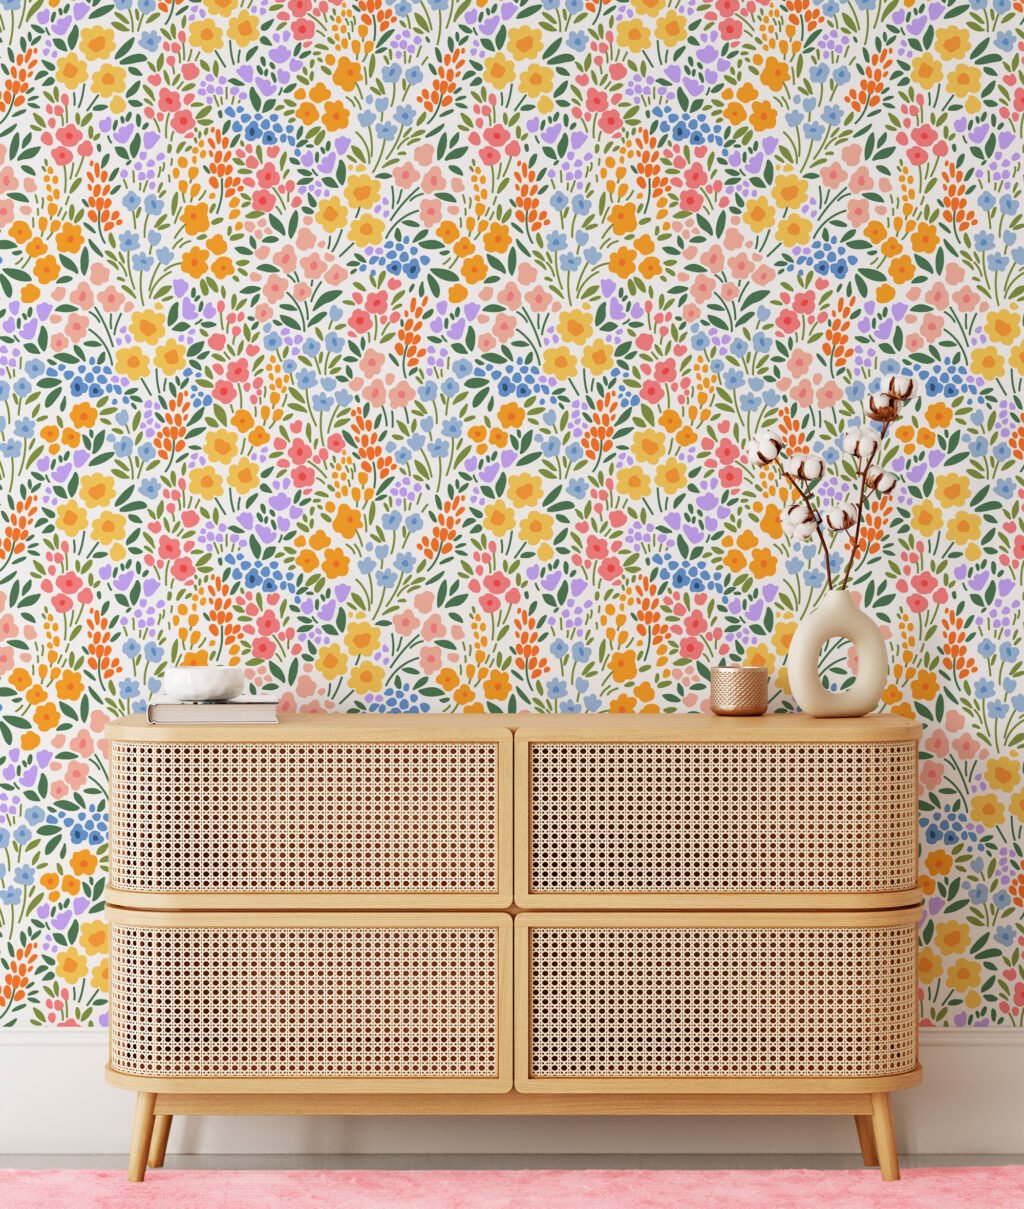 Renkli Küçük Çiçek Desenli Duvar Kağıdı, Canlı Çiçek Bahçesi Duvar Posteri Çiçekli Duvar Kağıtları 3